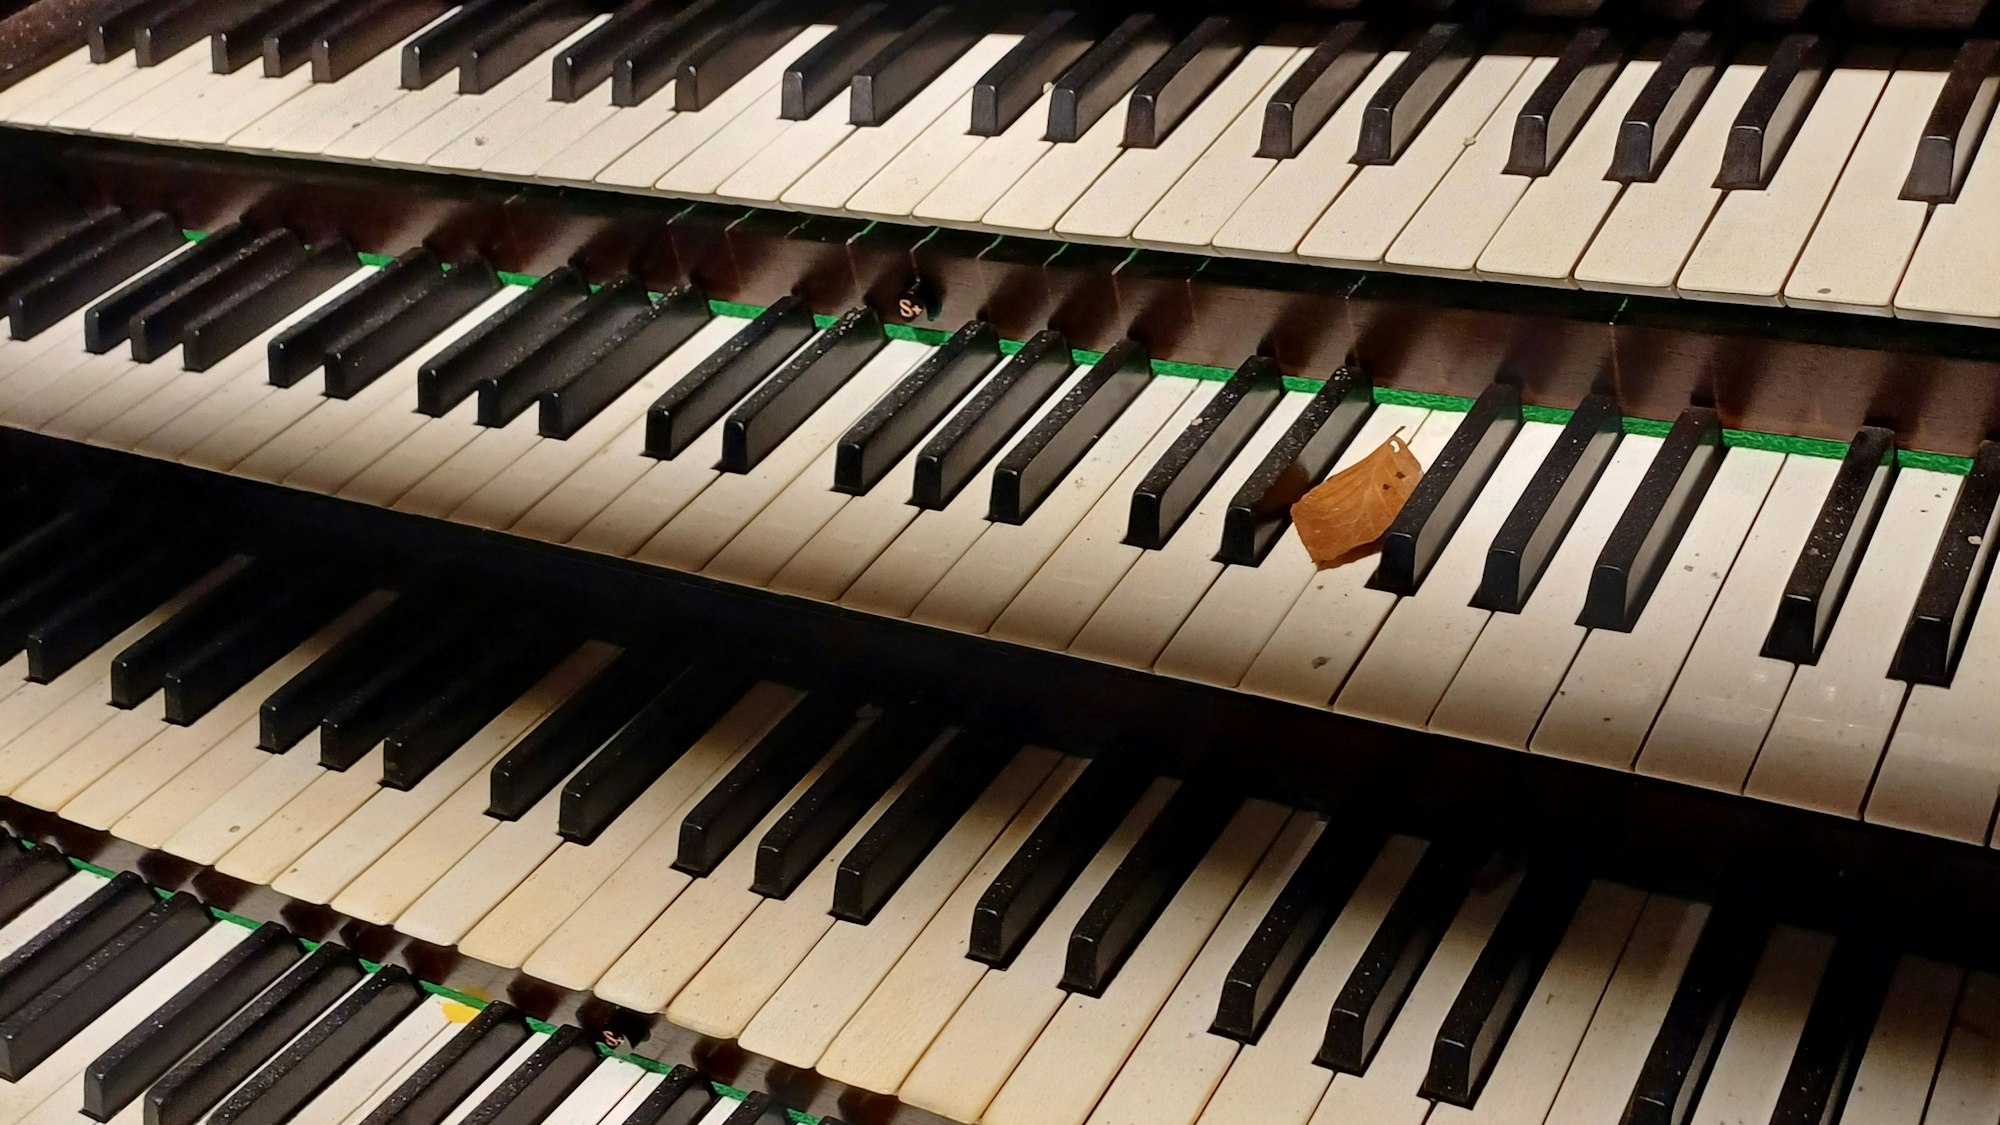 Auf der Tastatur der Orgel liegt Staub und ein trockenes Buchenblatt.